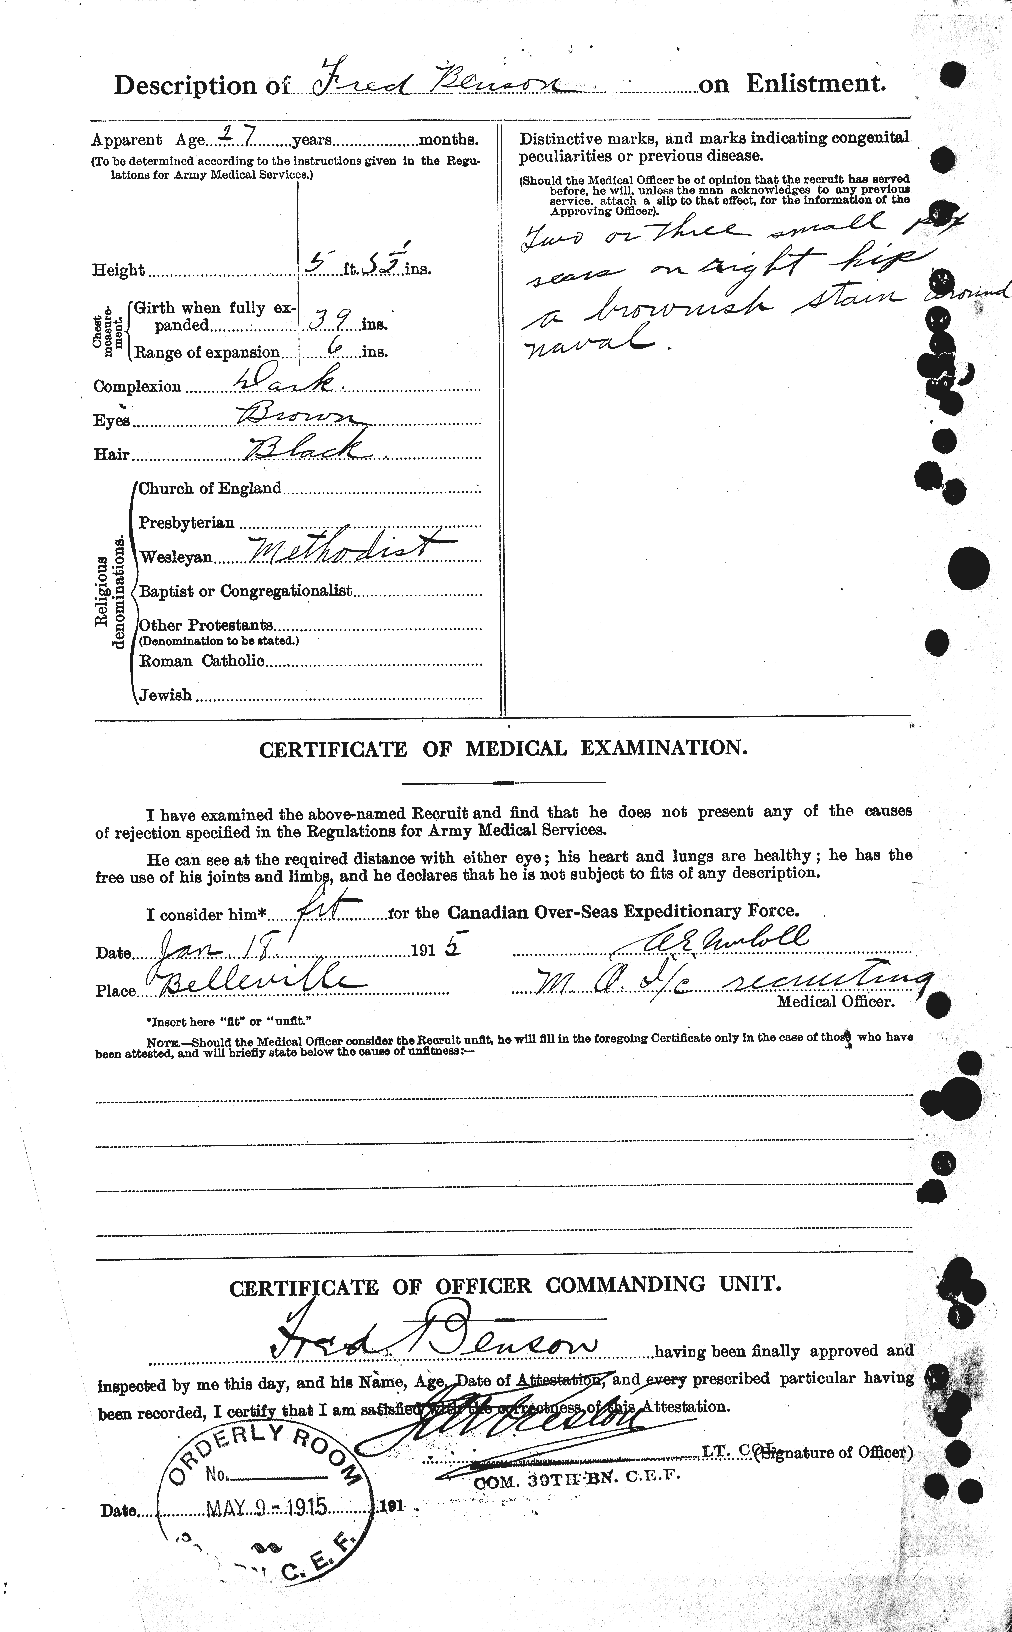 Dossiers du Personnel de la Première Guerre mondiale - CEC 238313b